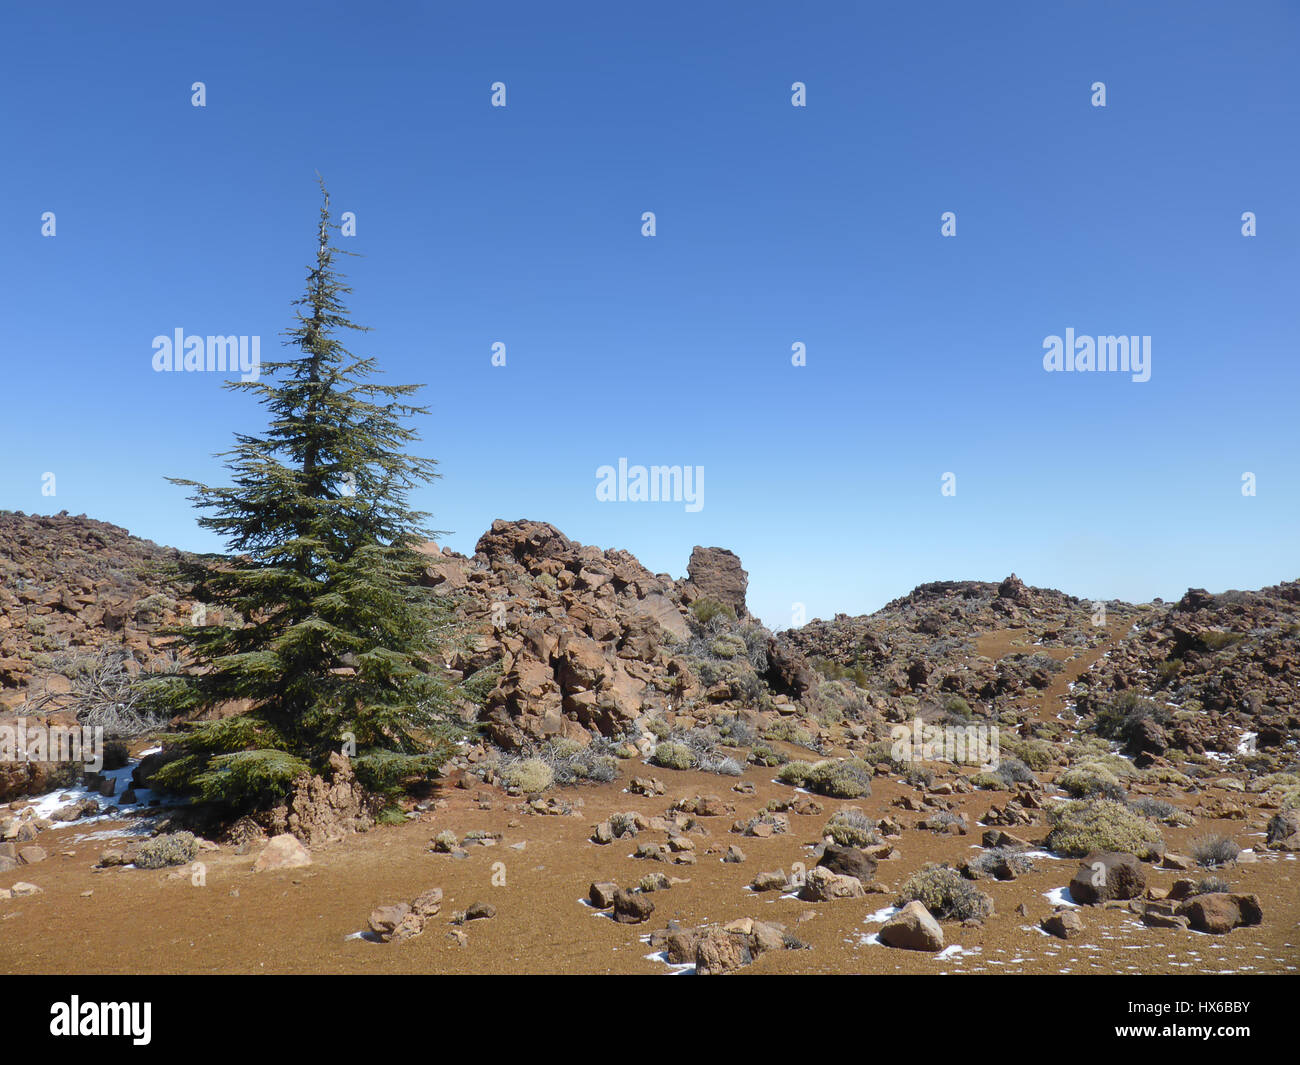 Weihnachtsbaum in Wüstenlandschaft - Berglandschaft Stockfoto